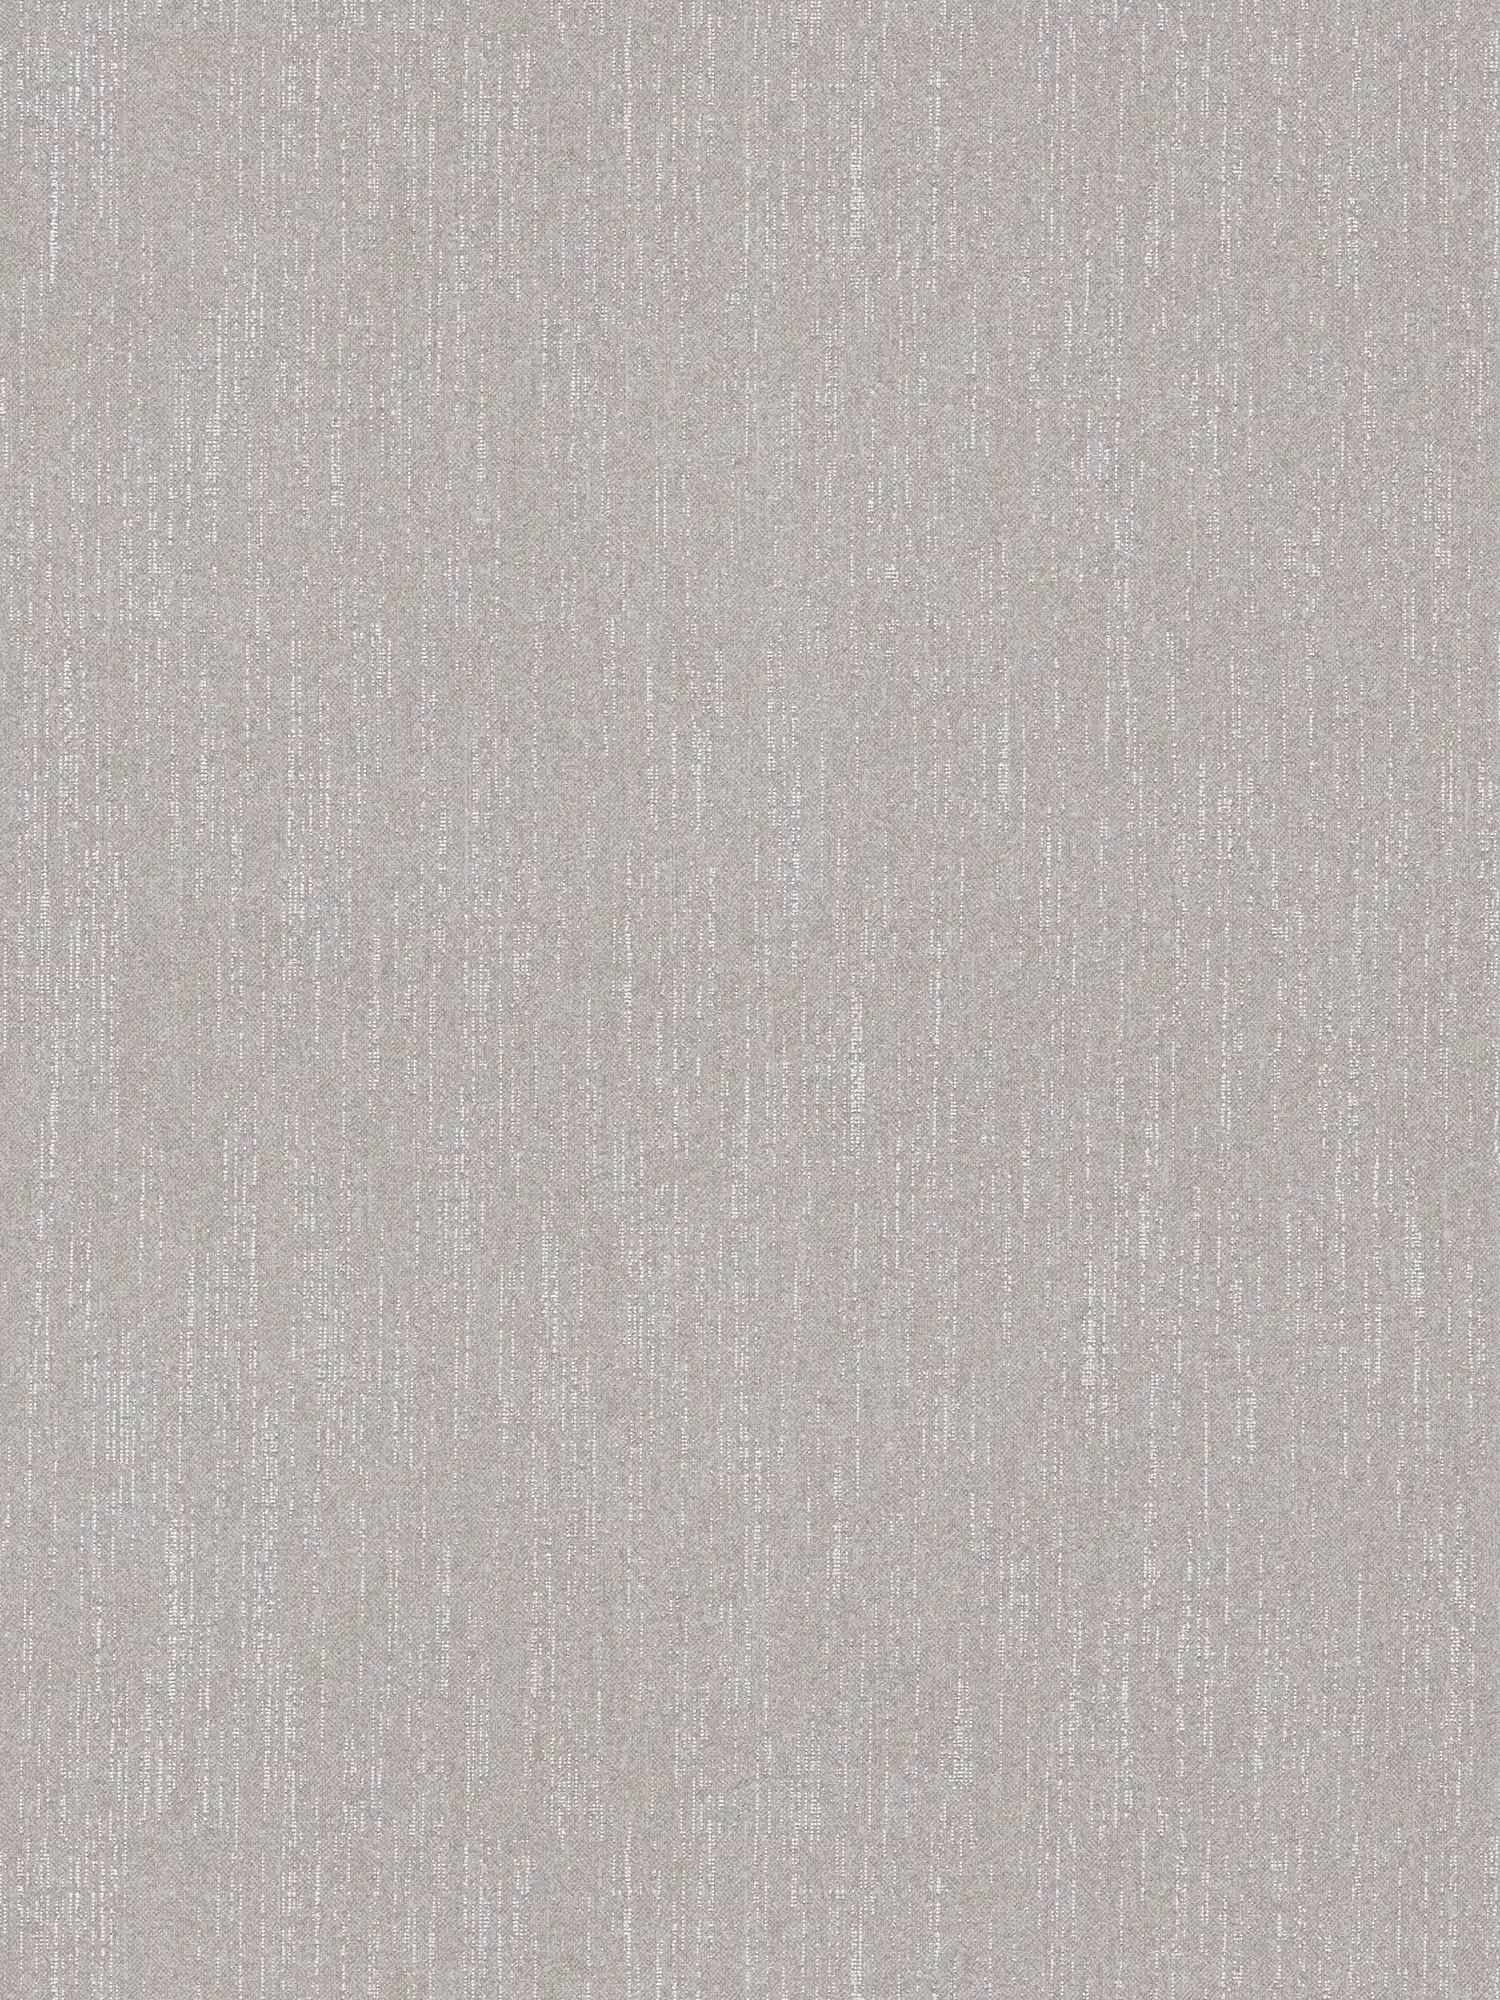 Carta da parati liscia grigio argento con effetto bouclé - grigio
